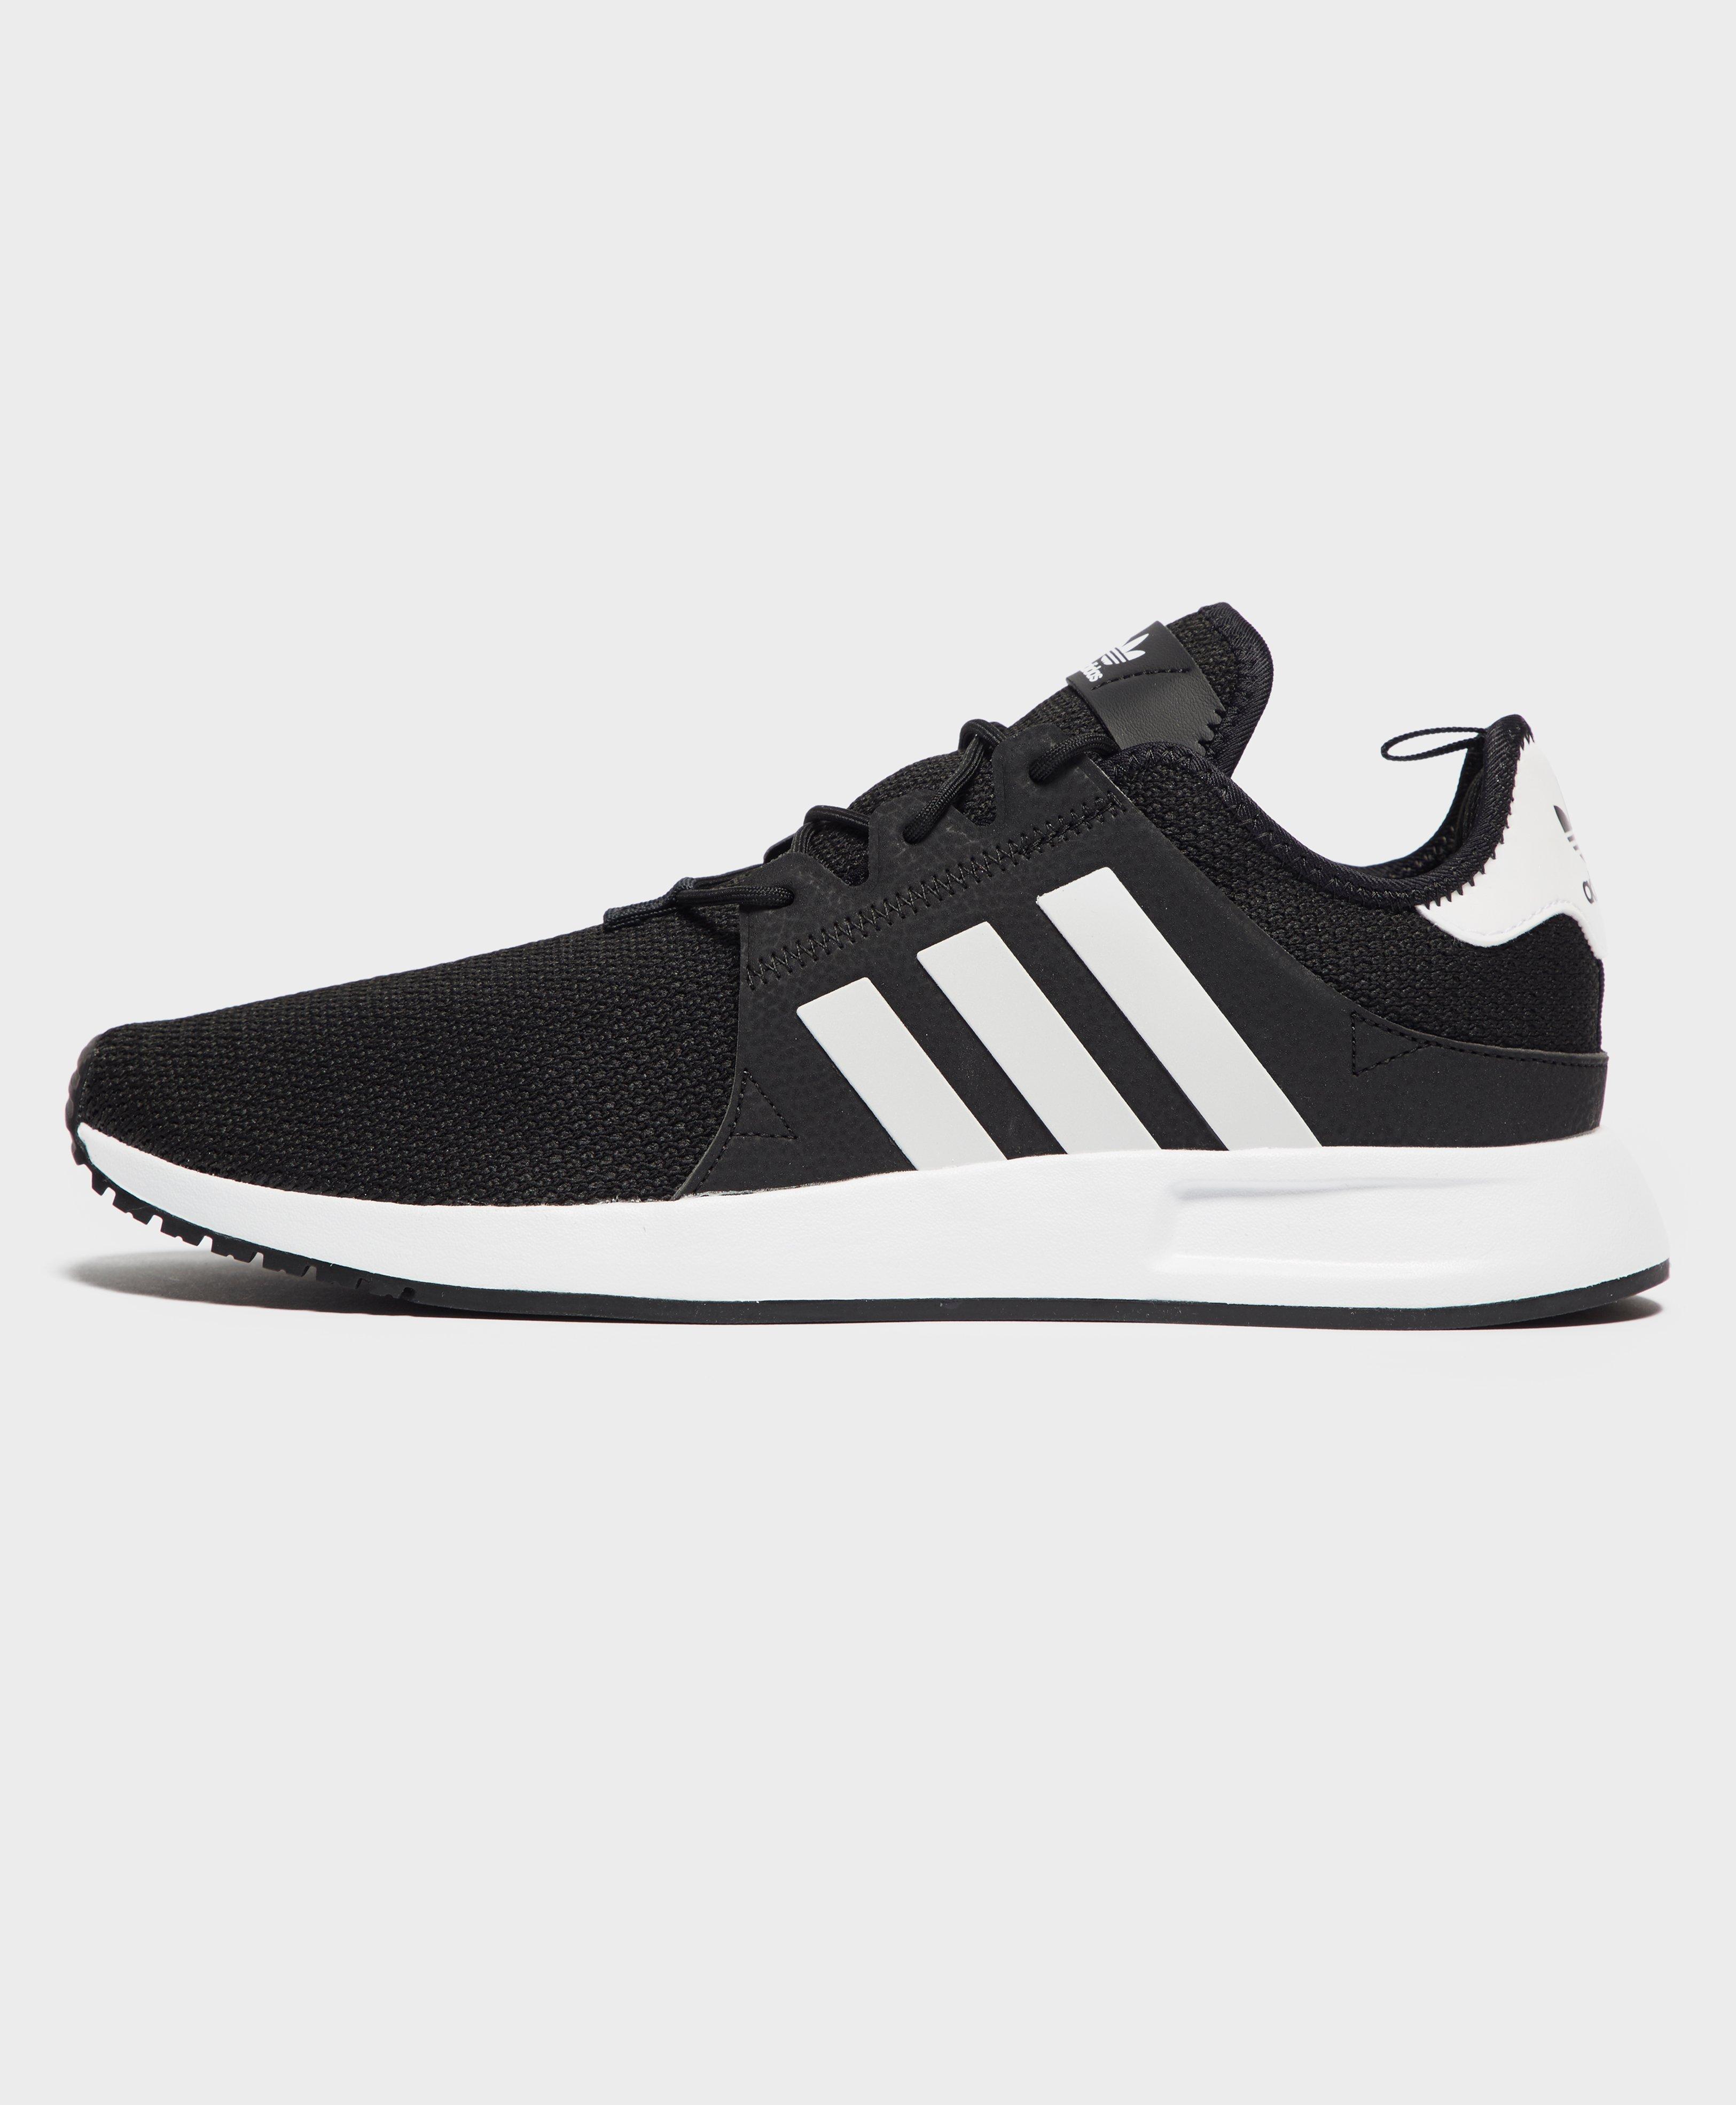 adidas Rubber X Plr Running Shoes in Black/White/Black (Black) for Men -  Lyst